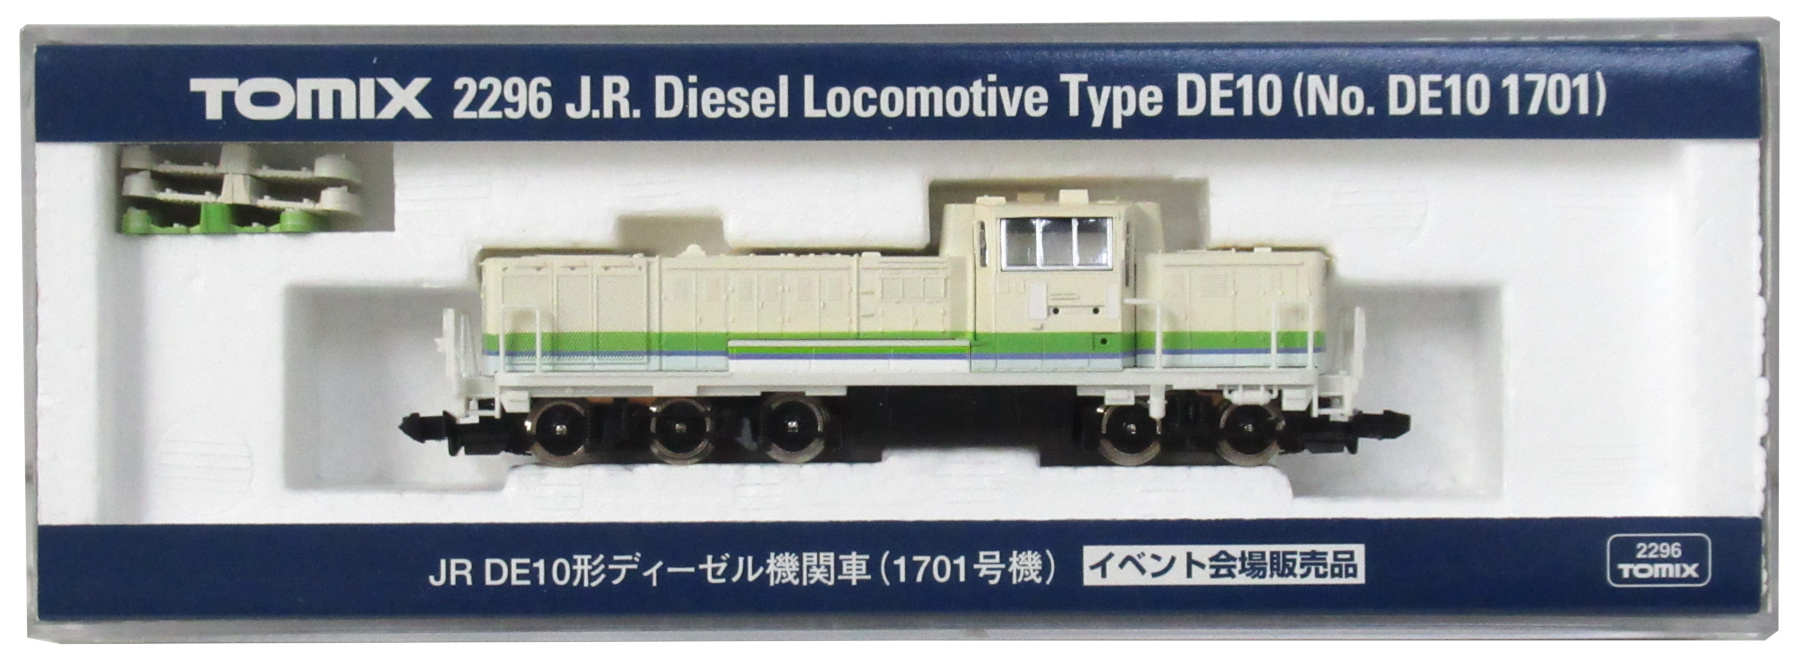 トミックス 2296 JR DE10形ディーゼル機関車(1701号機)